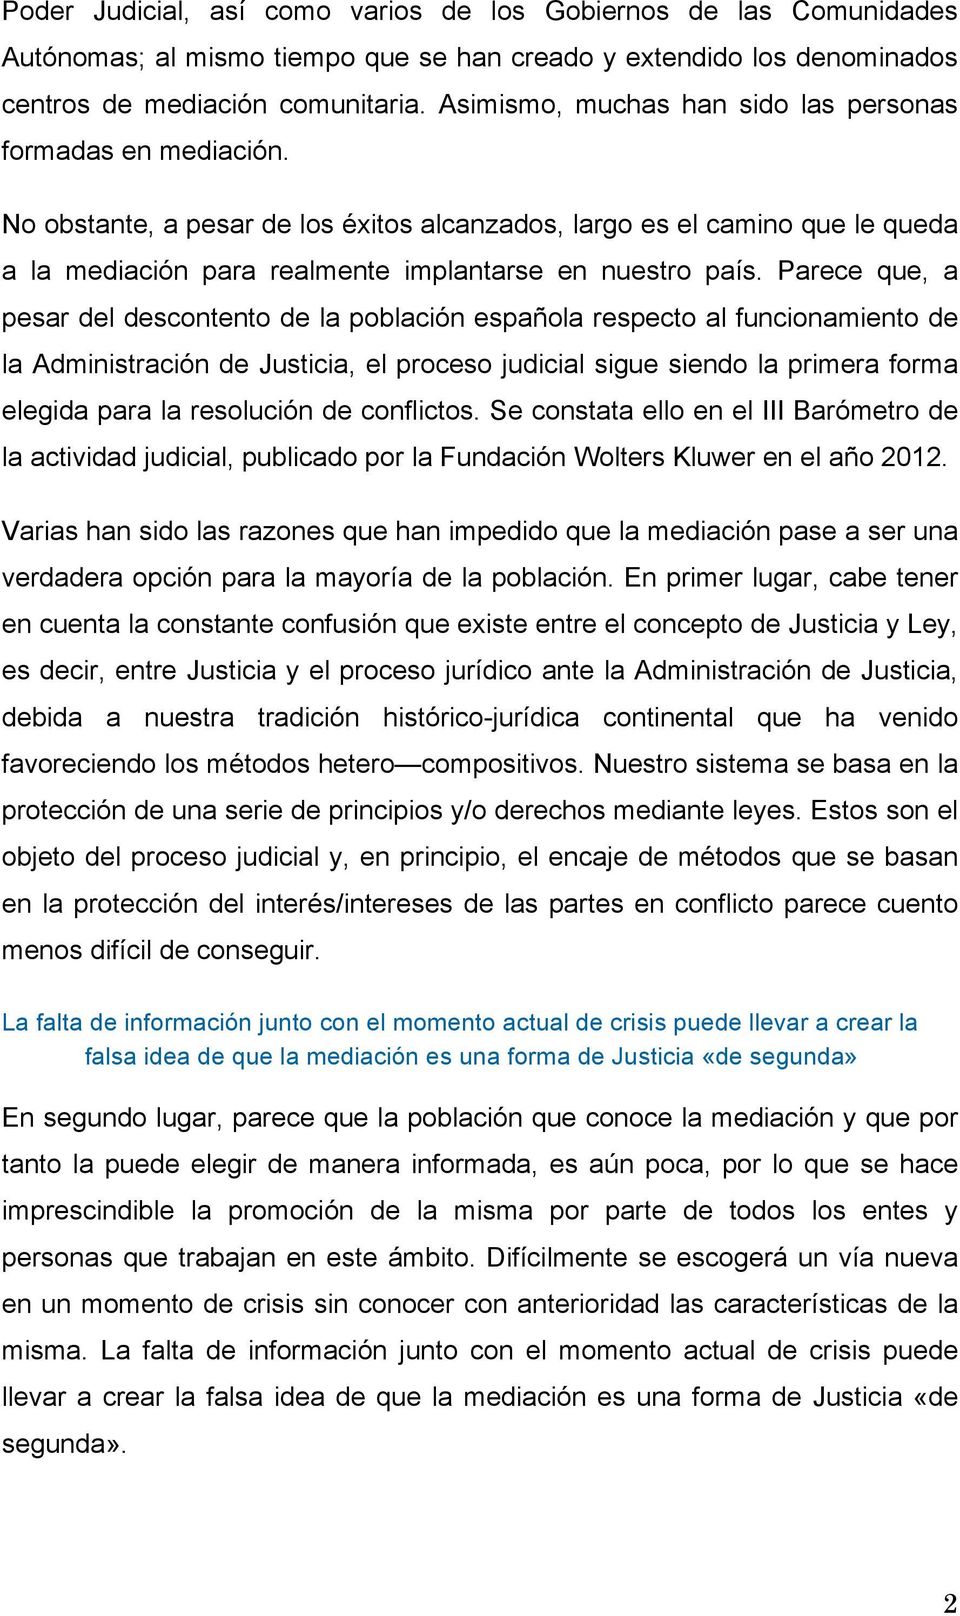 Parece que, a pesar del descontento de la población española respecto al funcionamiento de la Administración de Justicia, el proceso judicial sigue siendo la primera forma elegida para la resolución